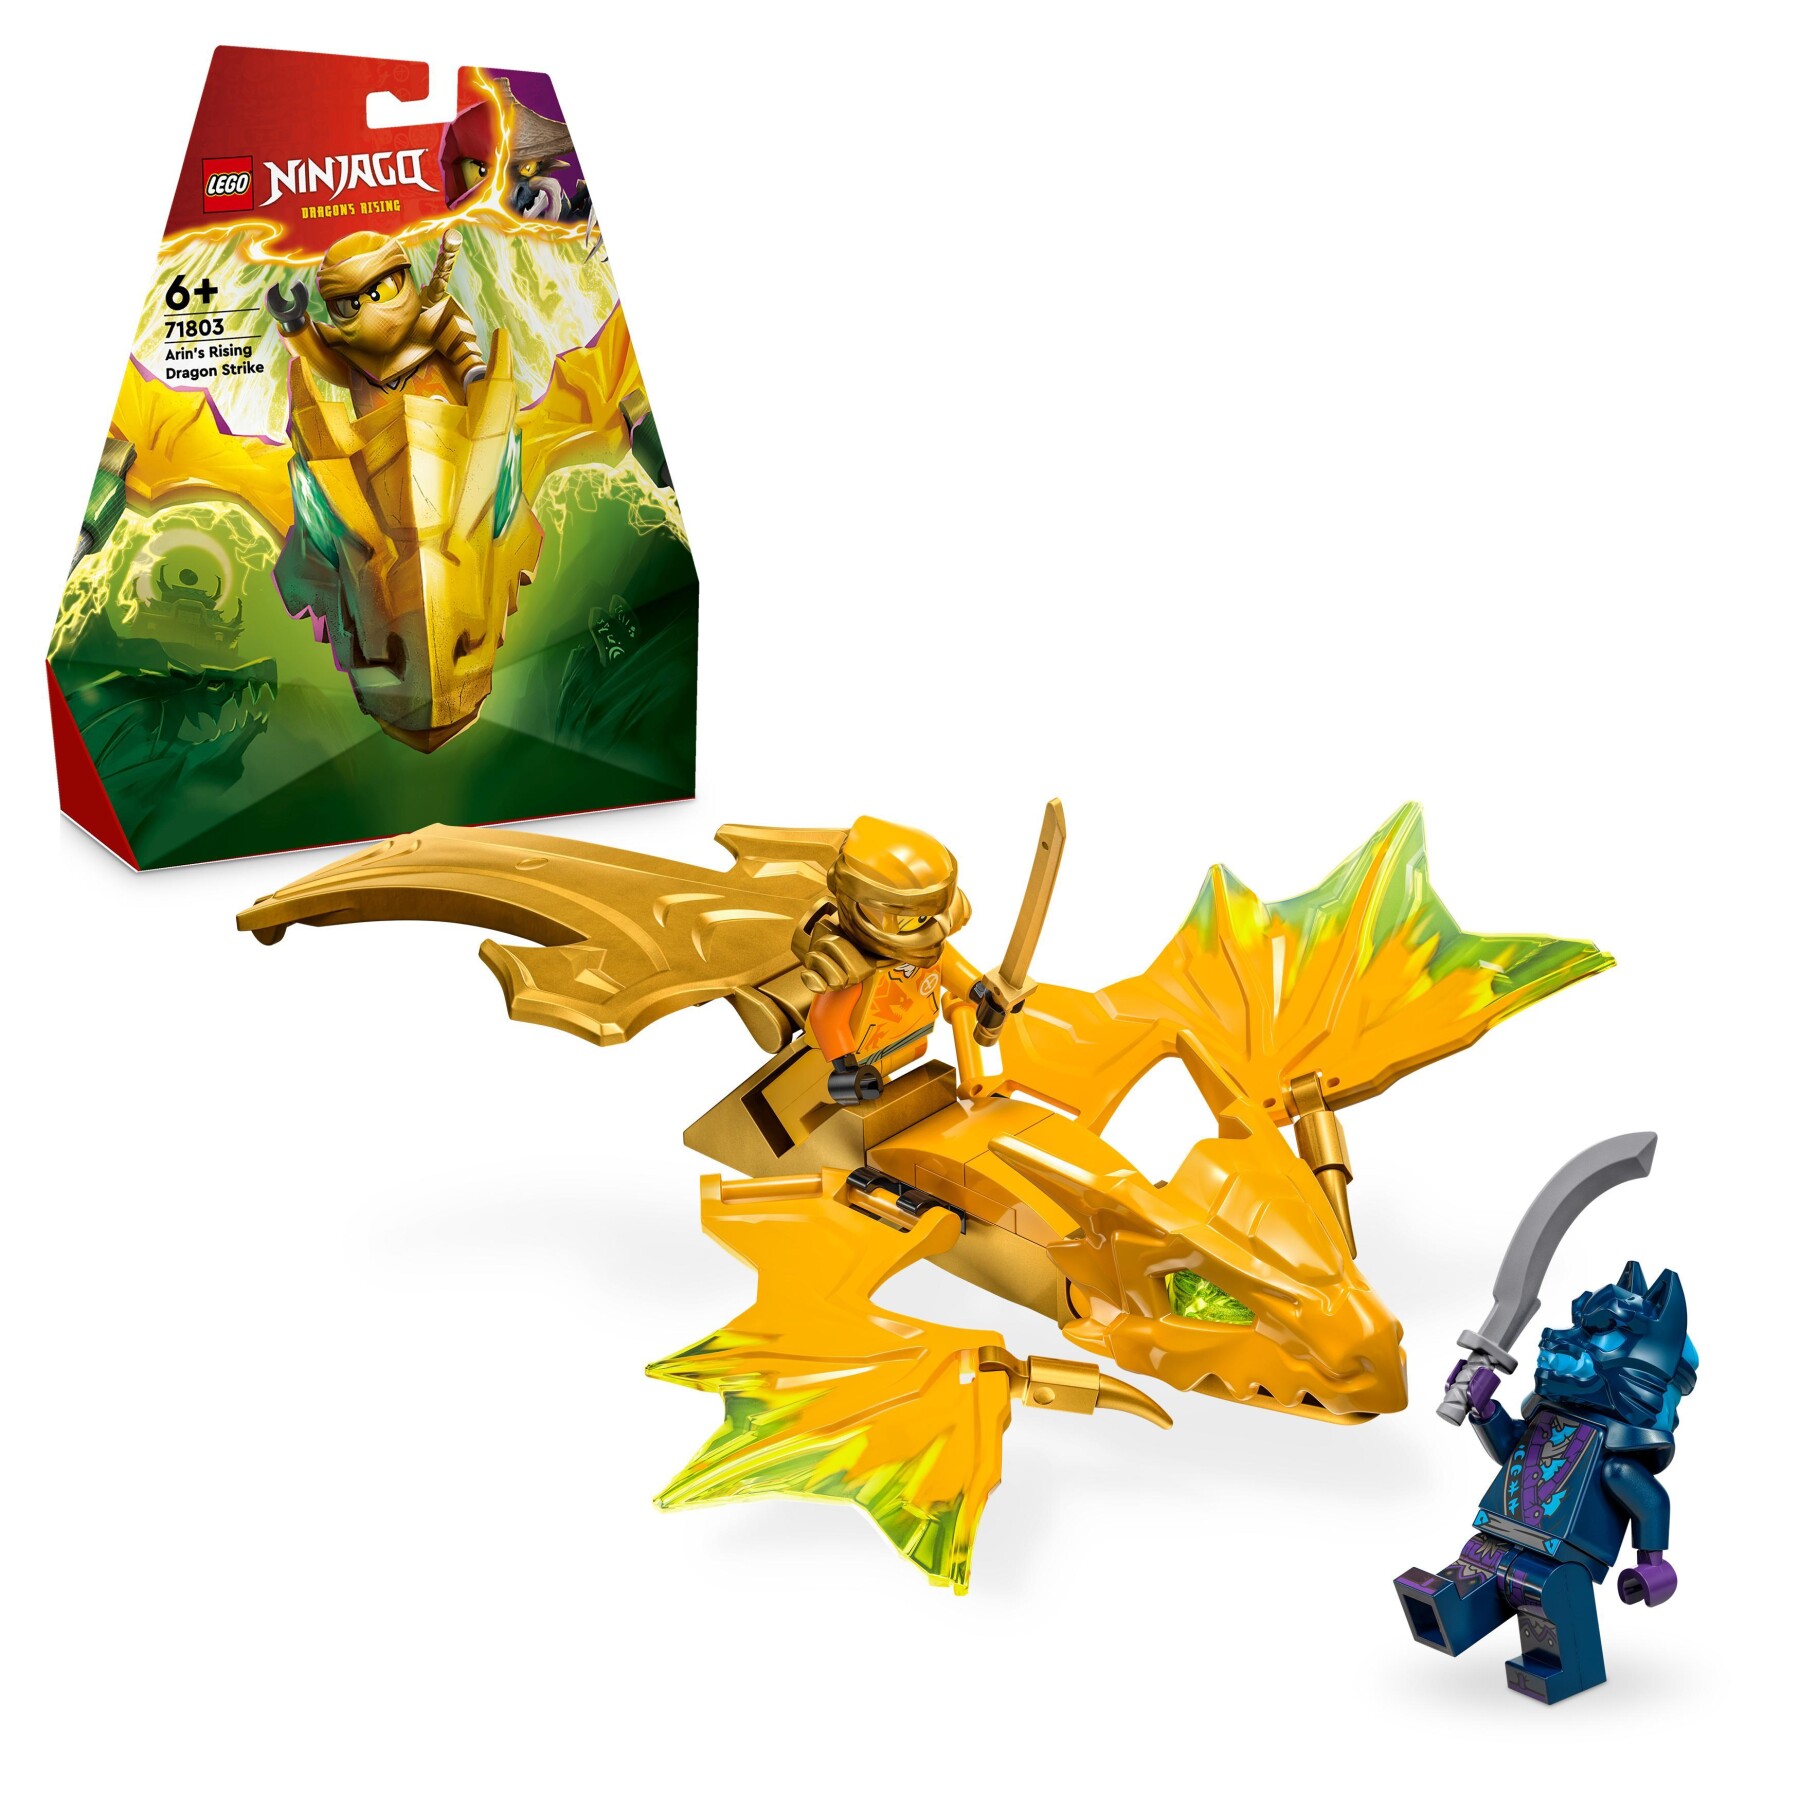 Lego ninjago 71803 attacco del rising dragon di arin, giochi per bambini 6+ con action figure di drago giocattolo e minifigure - LEGO NINJAGO